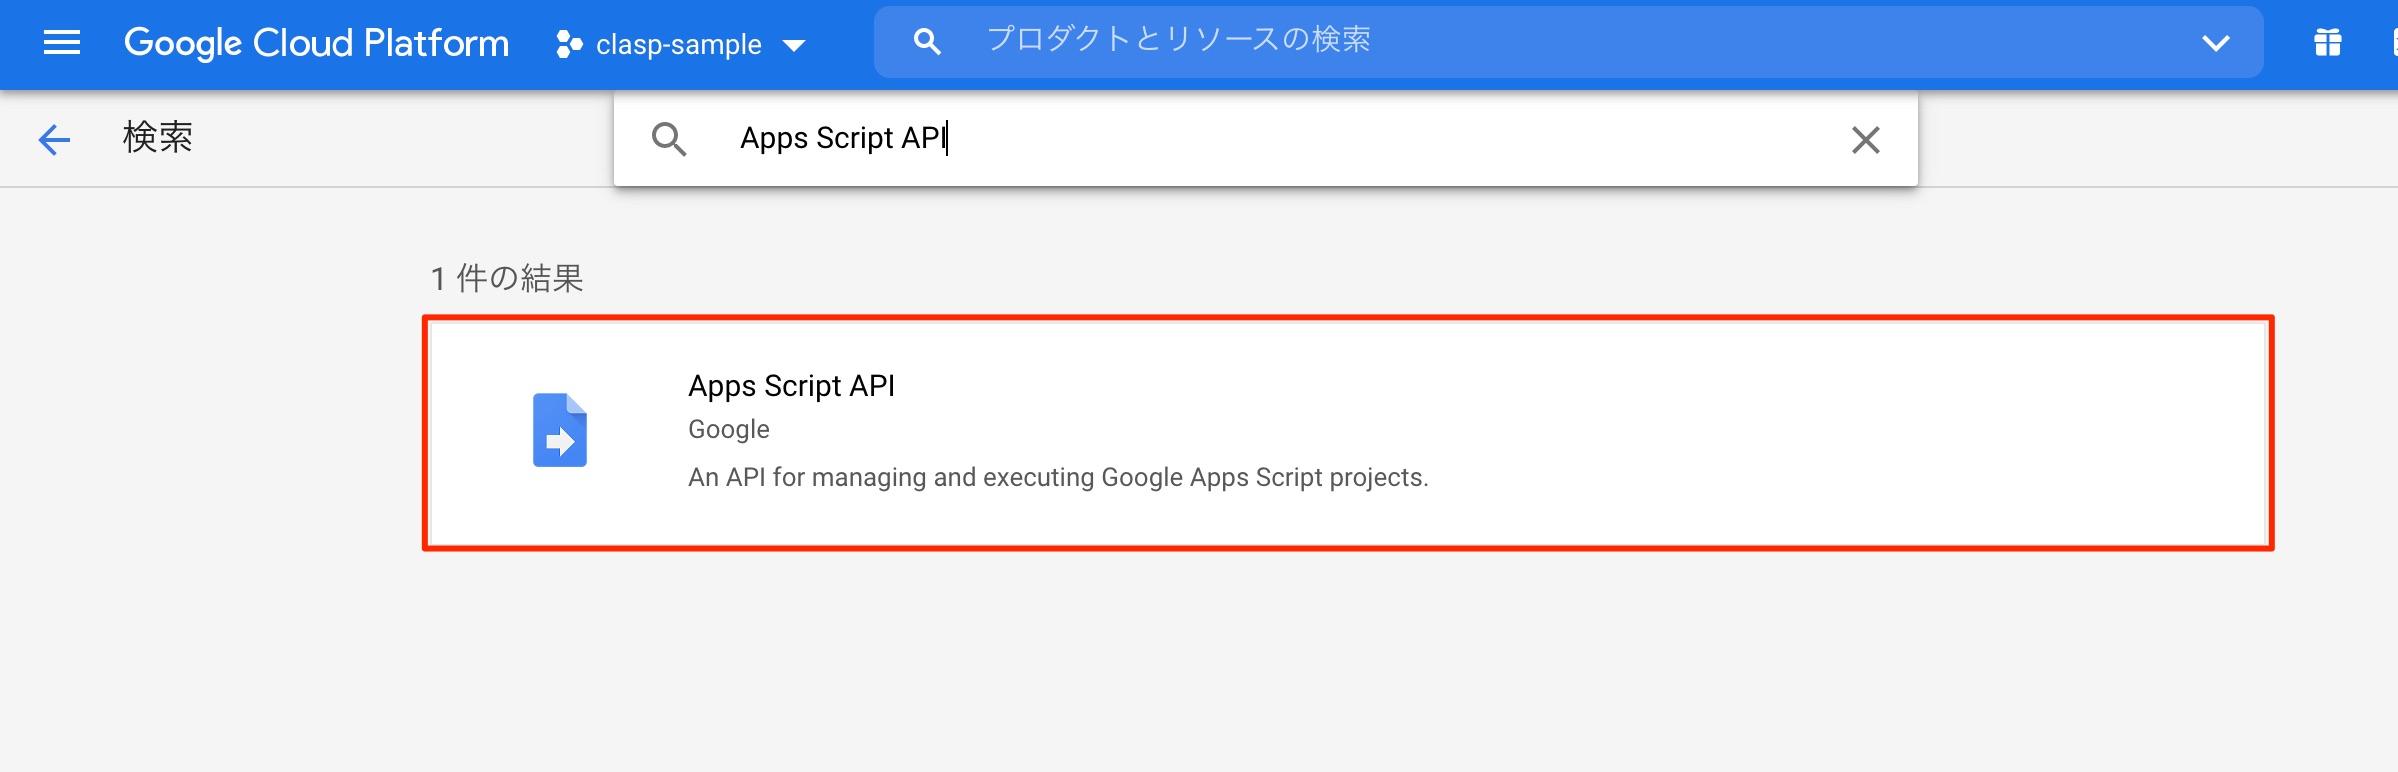 GCPのコンソール Apps Script APIを検索